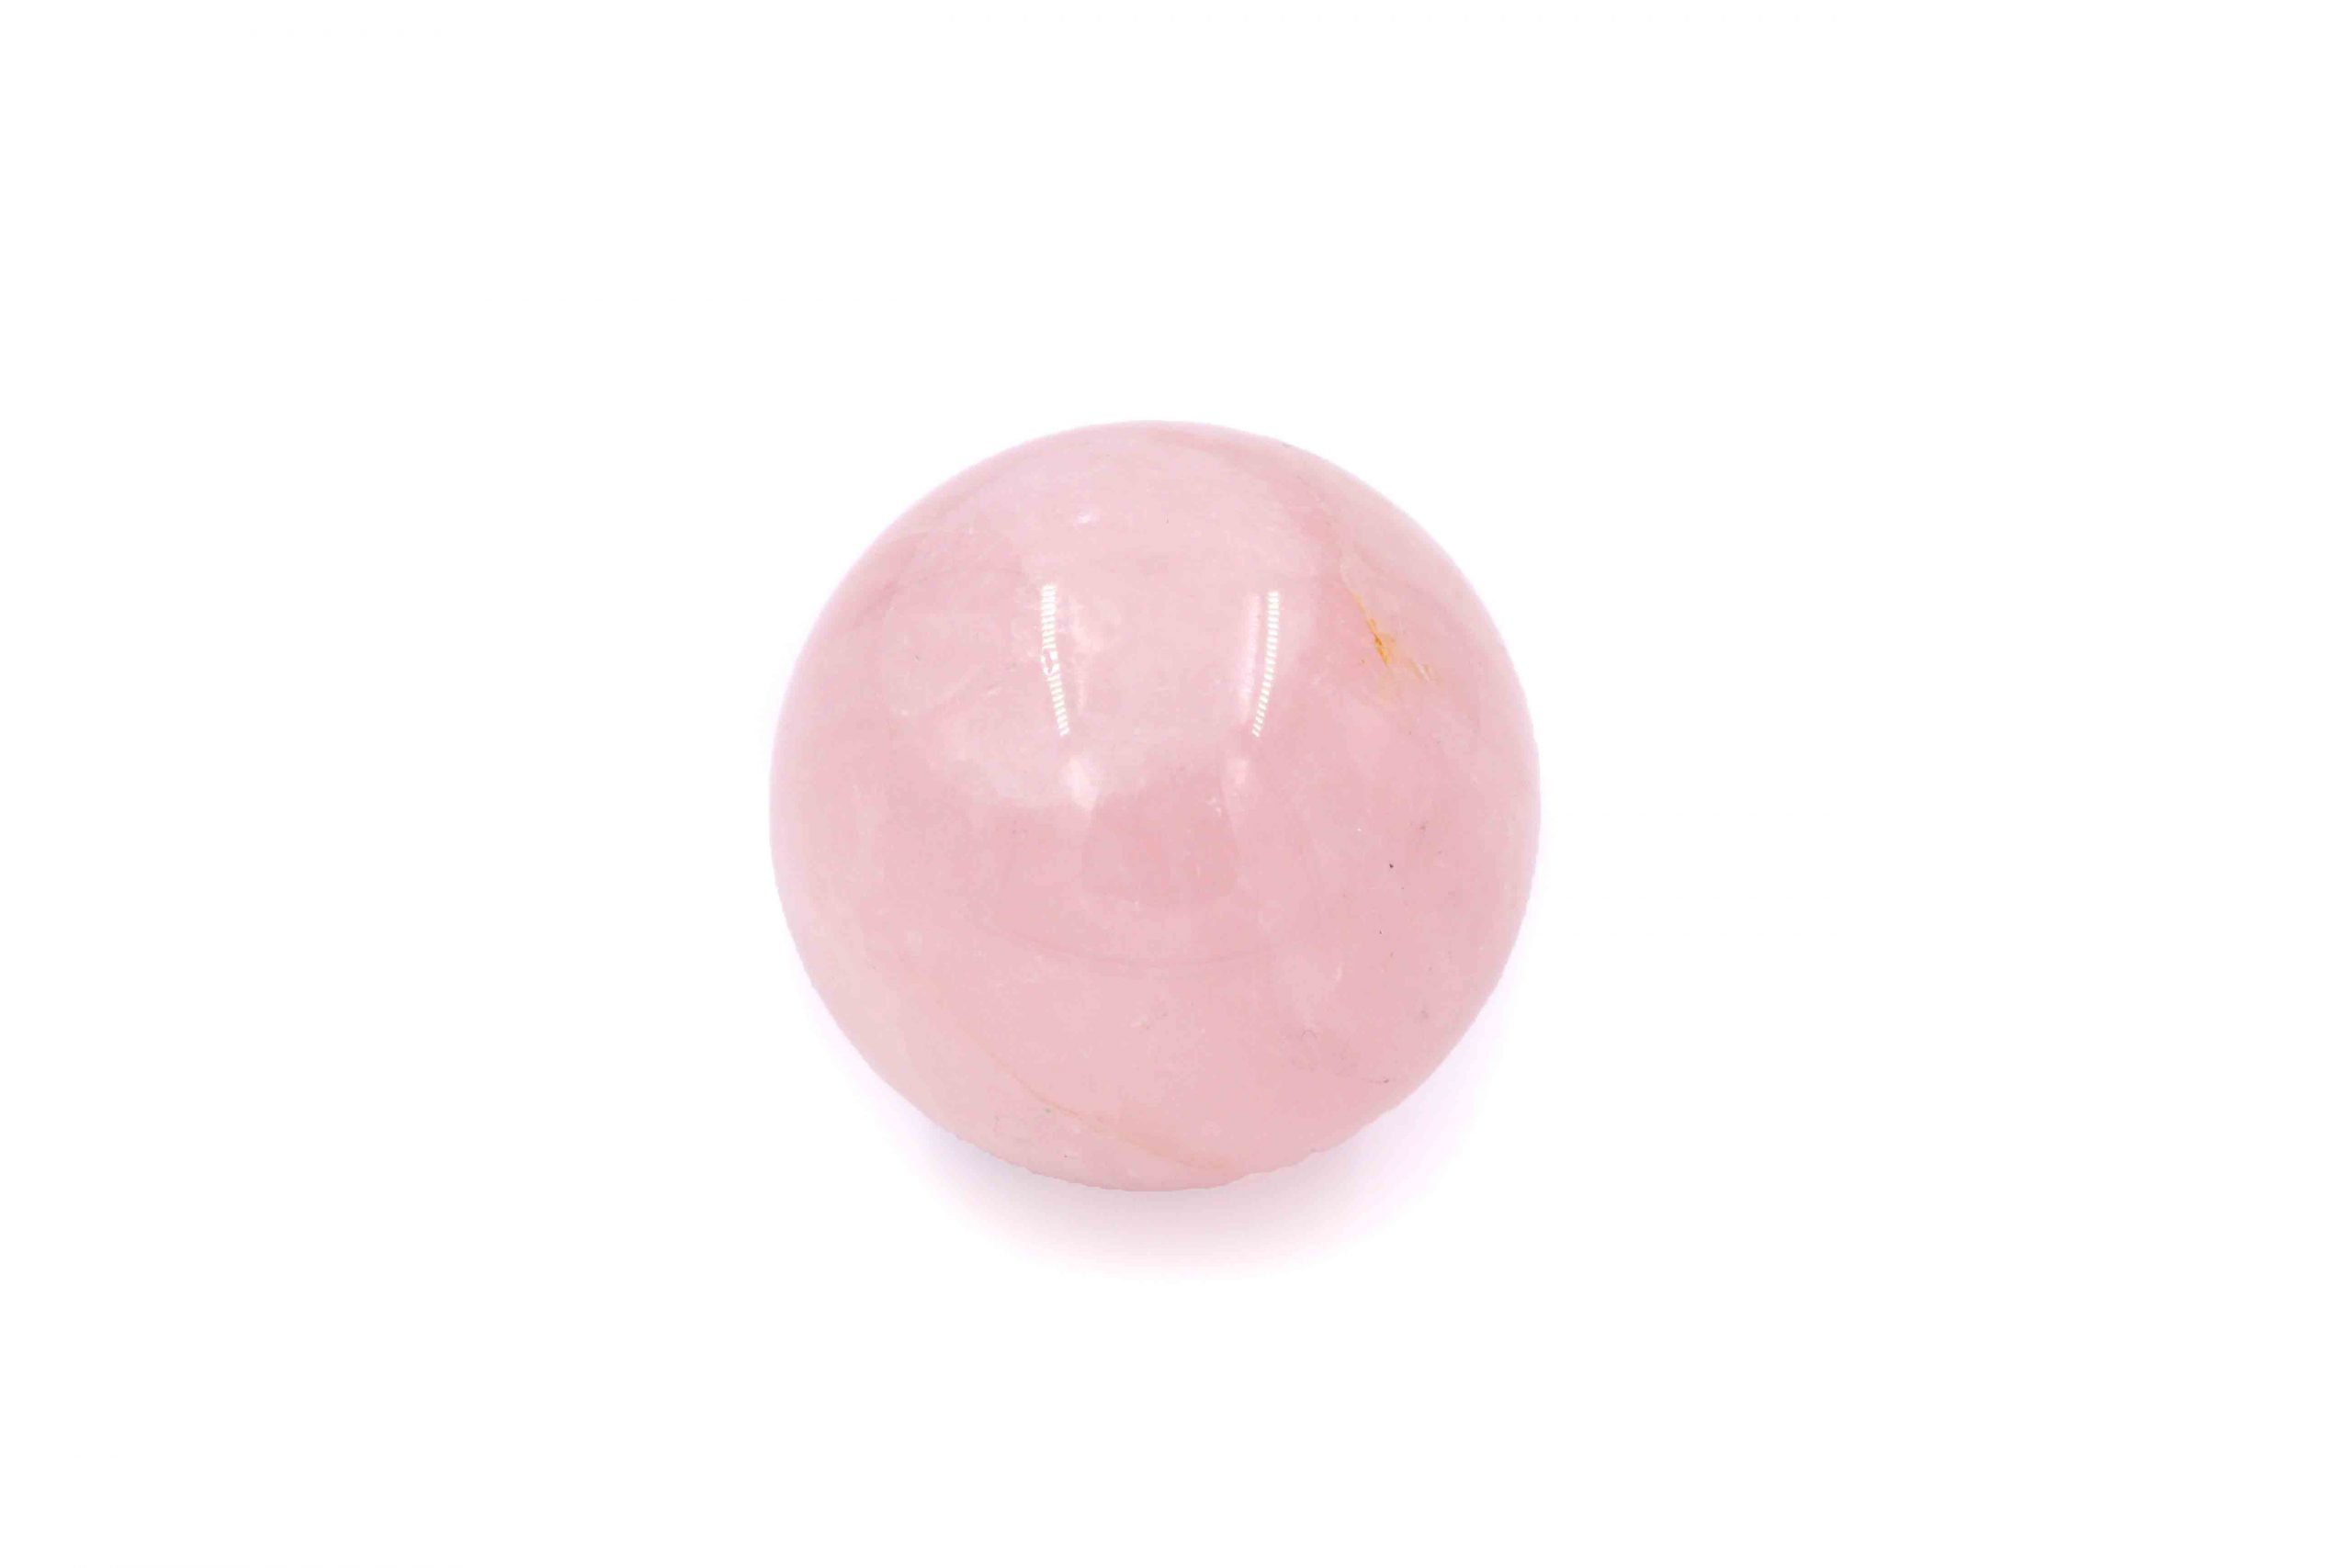 Rose quartz sphere natural - Crystal Dreams